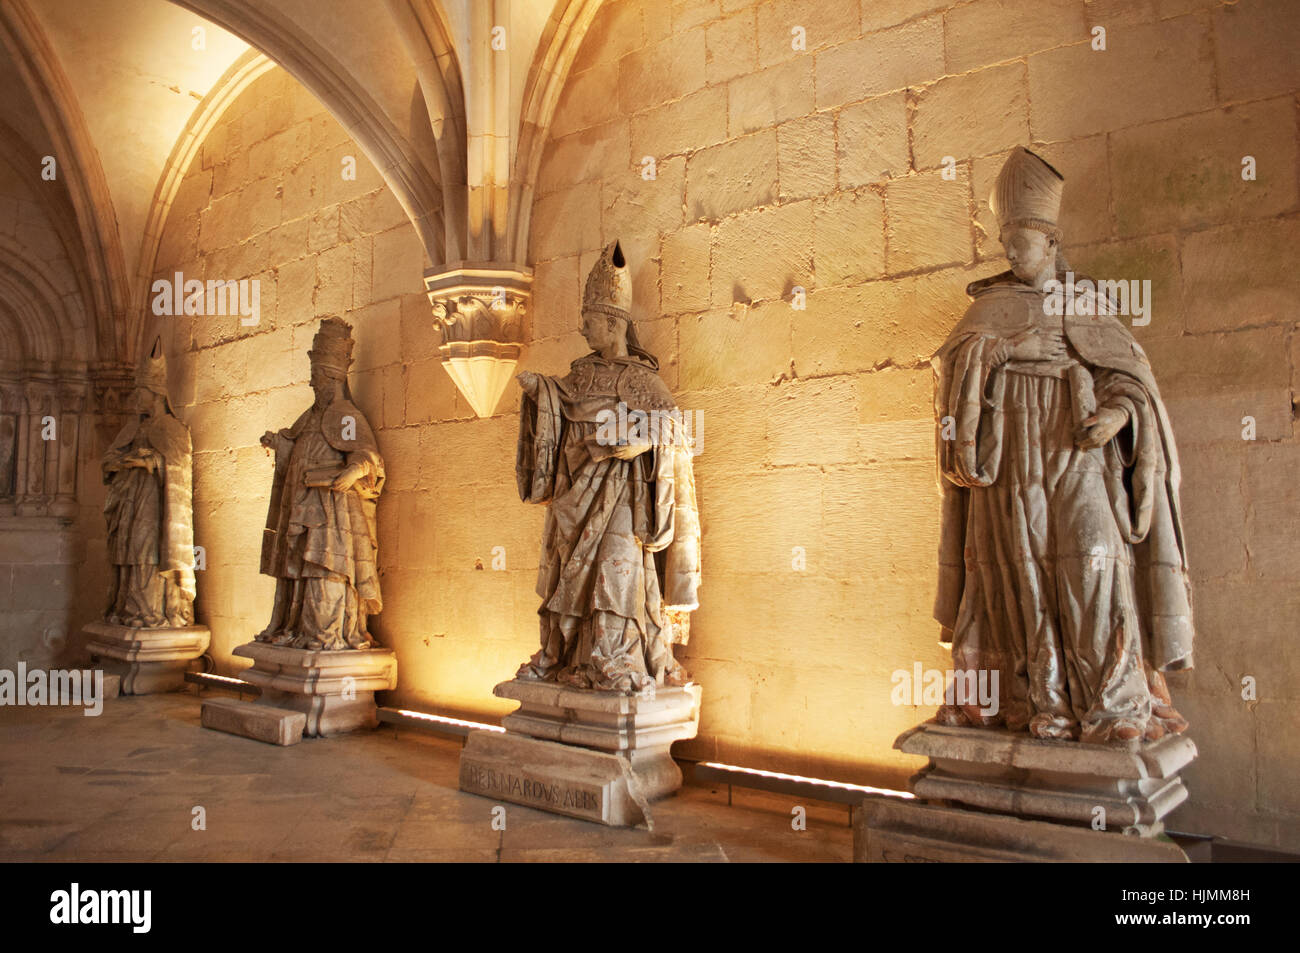 Monasterio de Alcobaca: la Sala Capitular, la sala con estatuas barrocas, donde los monjes se reunieron para discutir los asuntos diarios Foto de stock